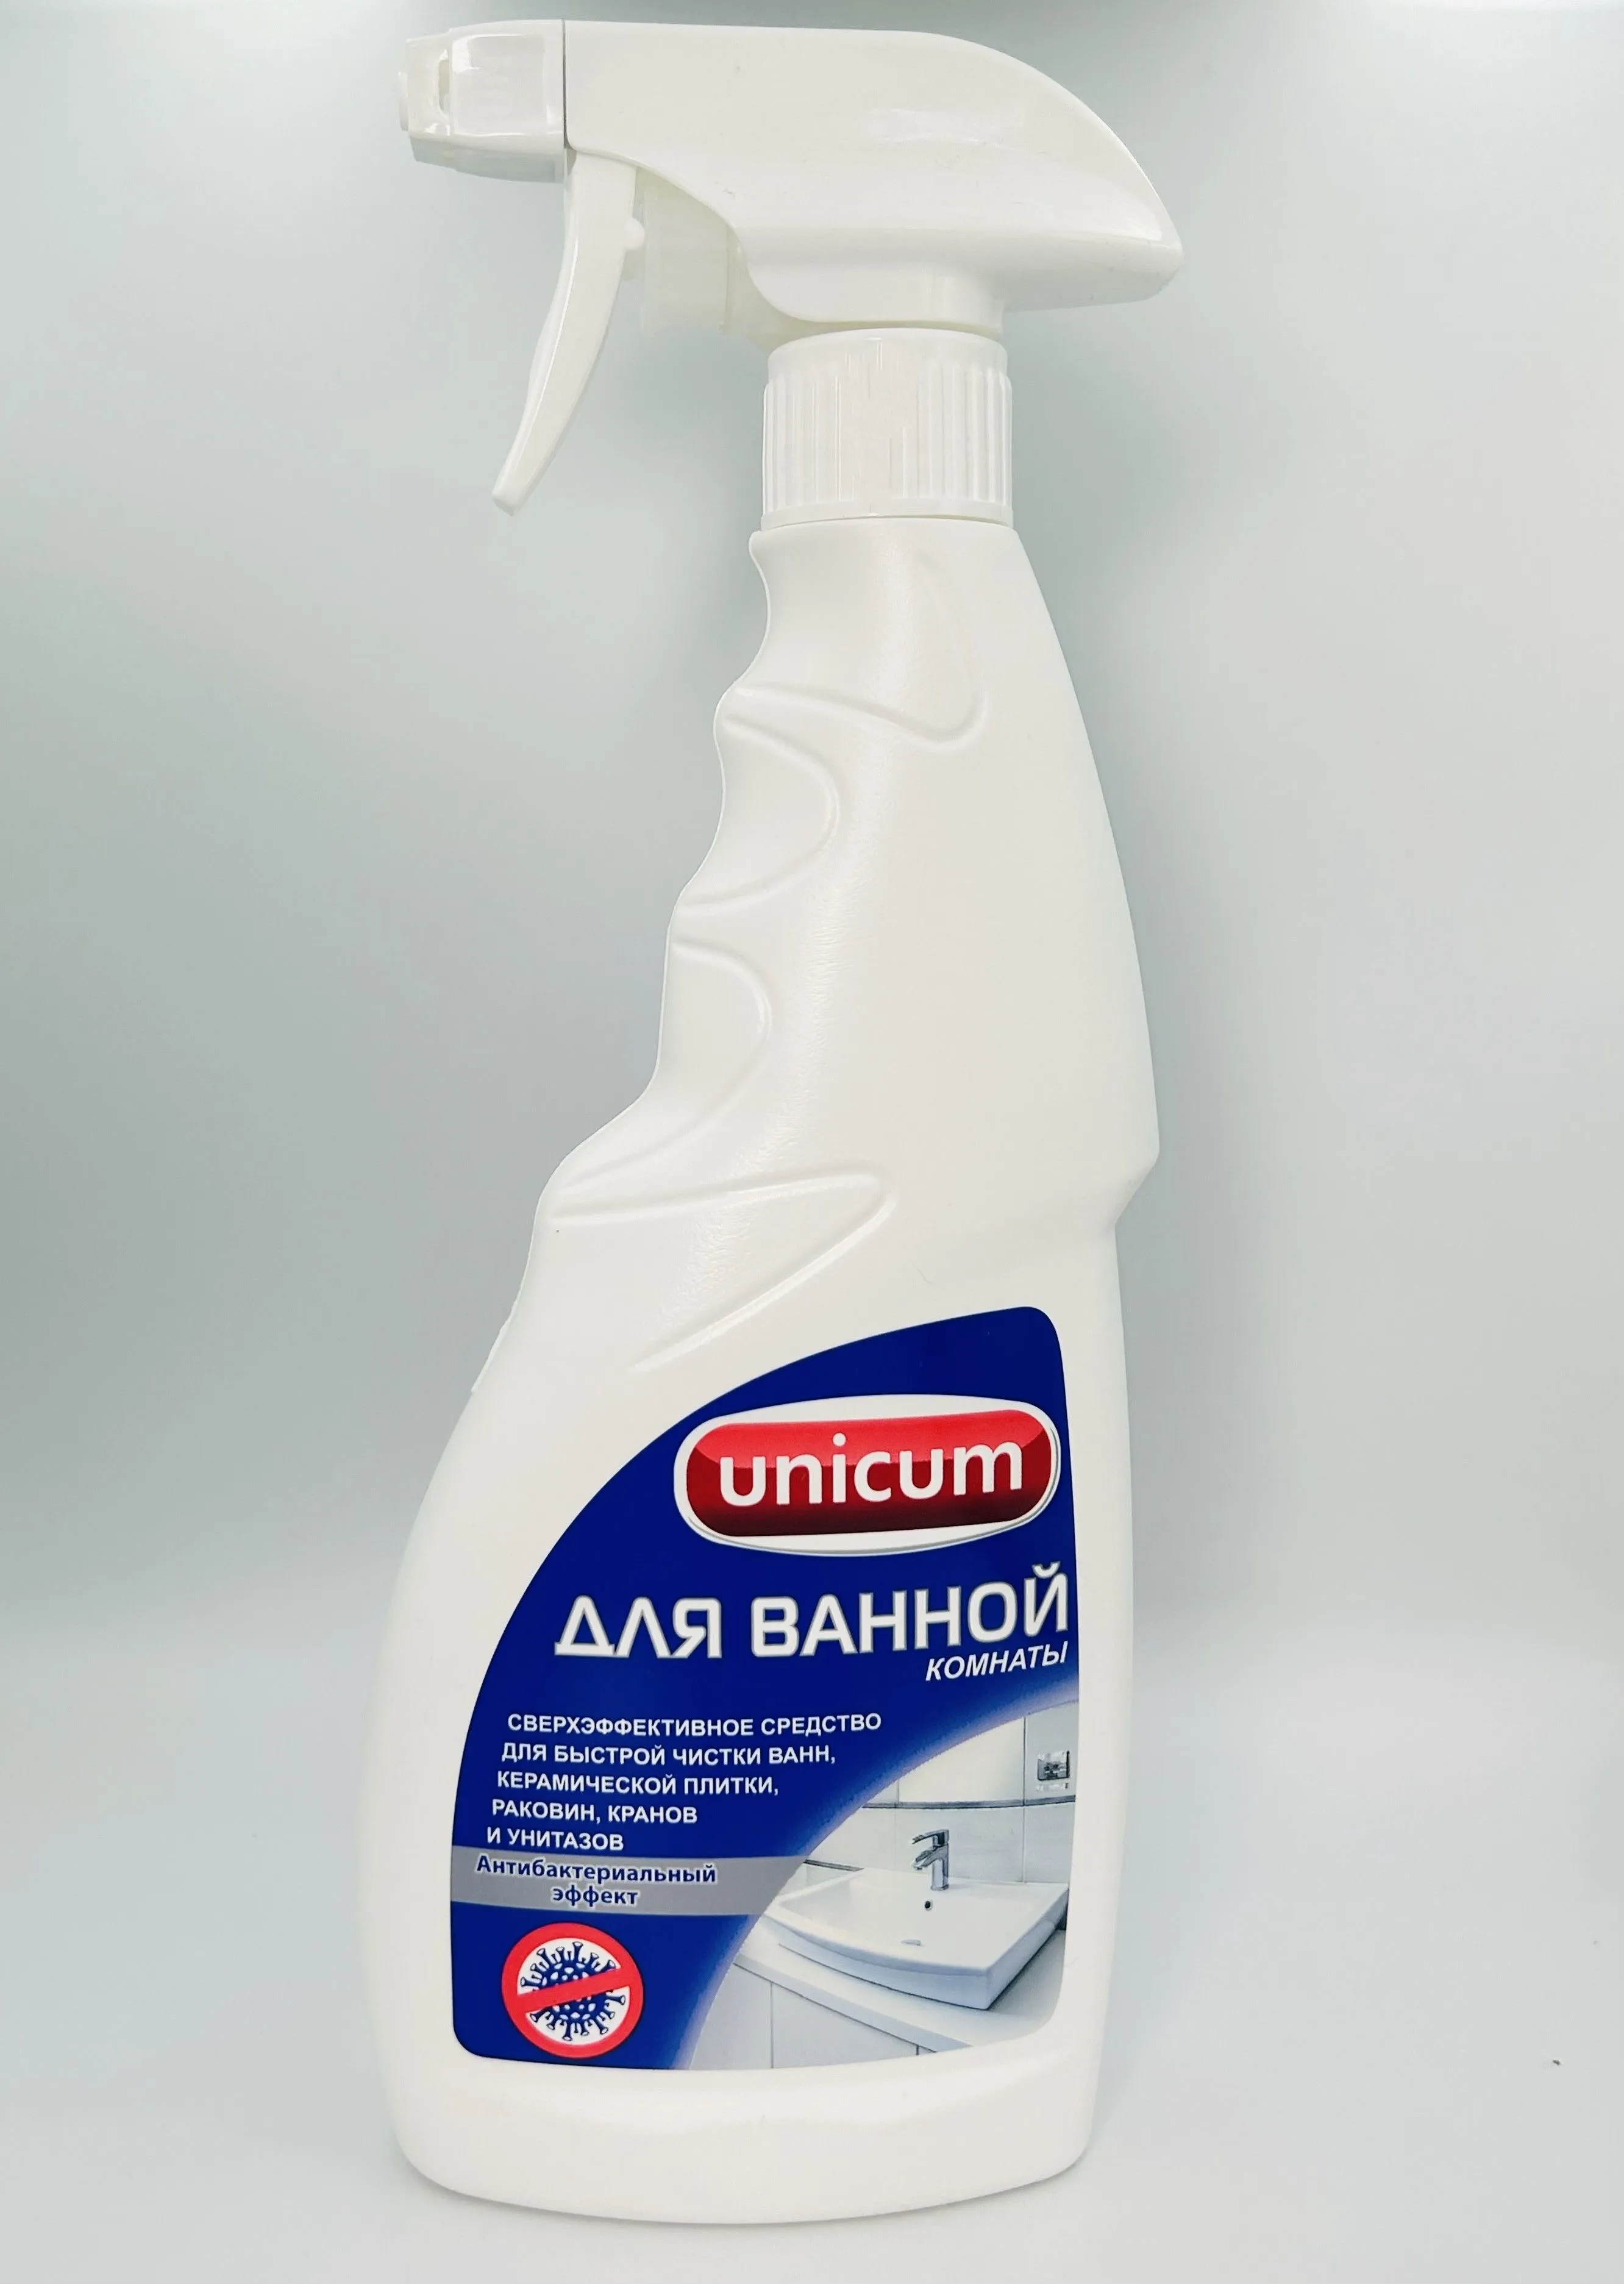 UNiCUM Средство для чистки ванной комнаты 500 мл с распылителем